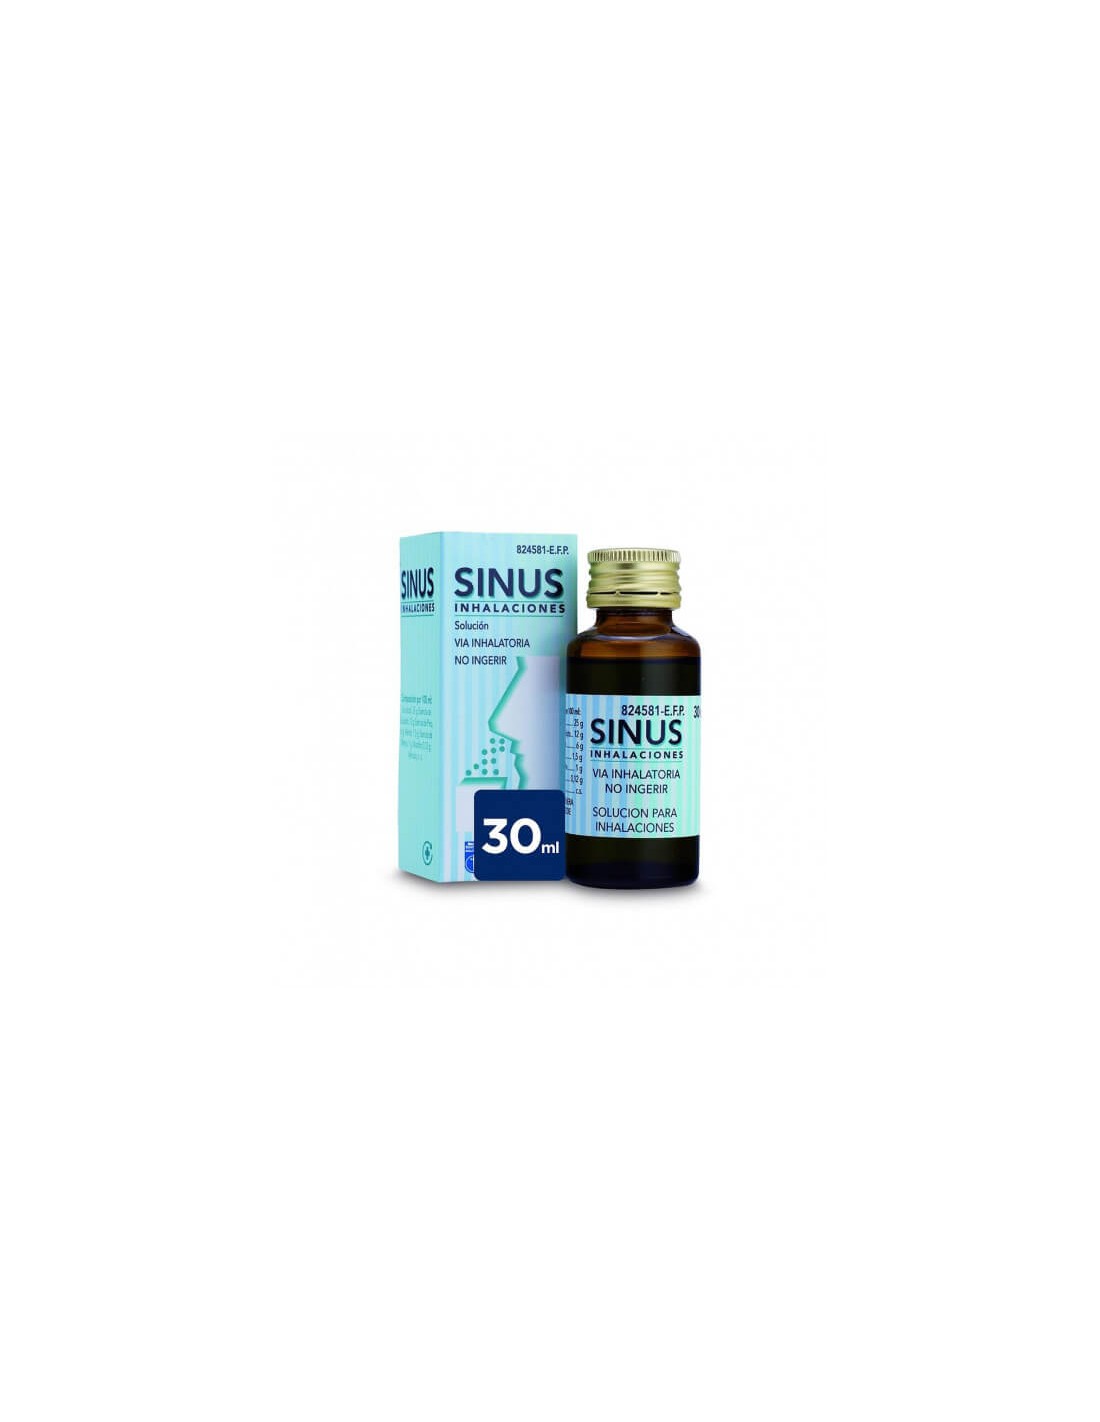 Sinus inhalaciones solución para inhalación 30 ml